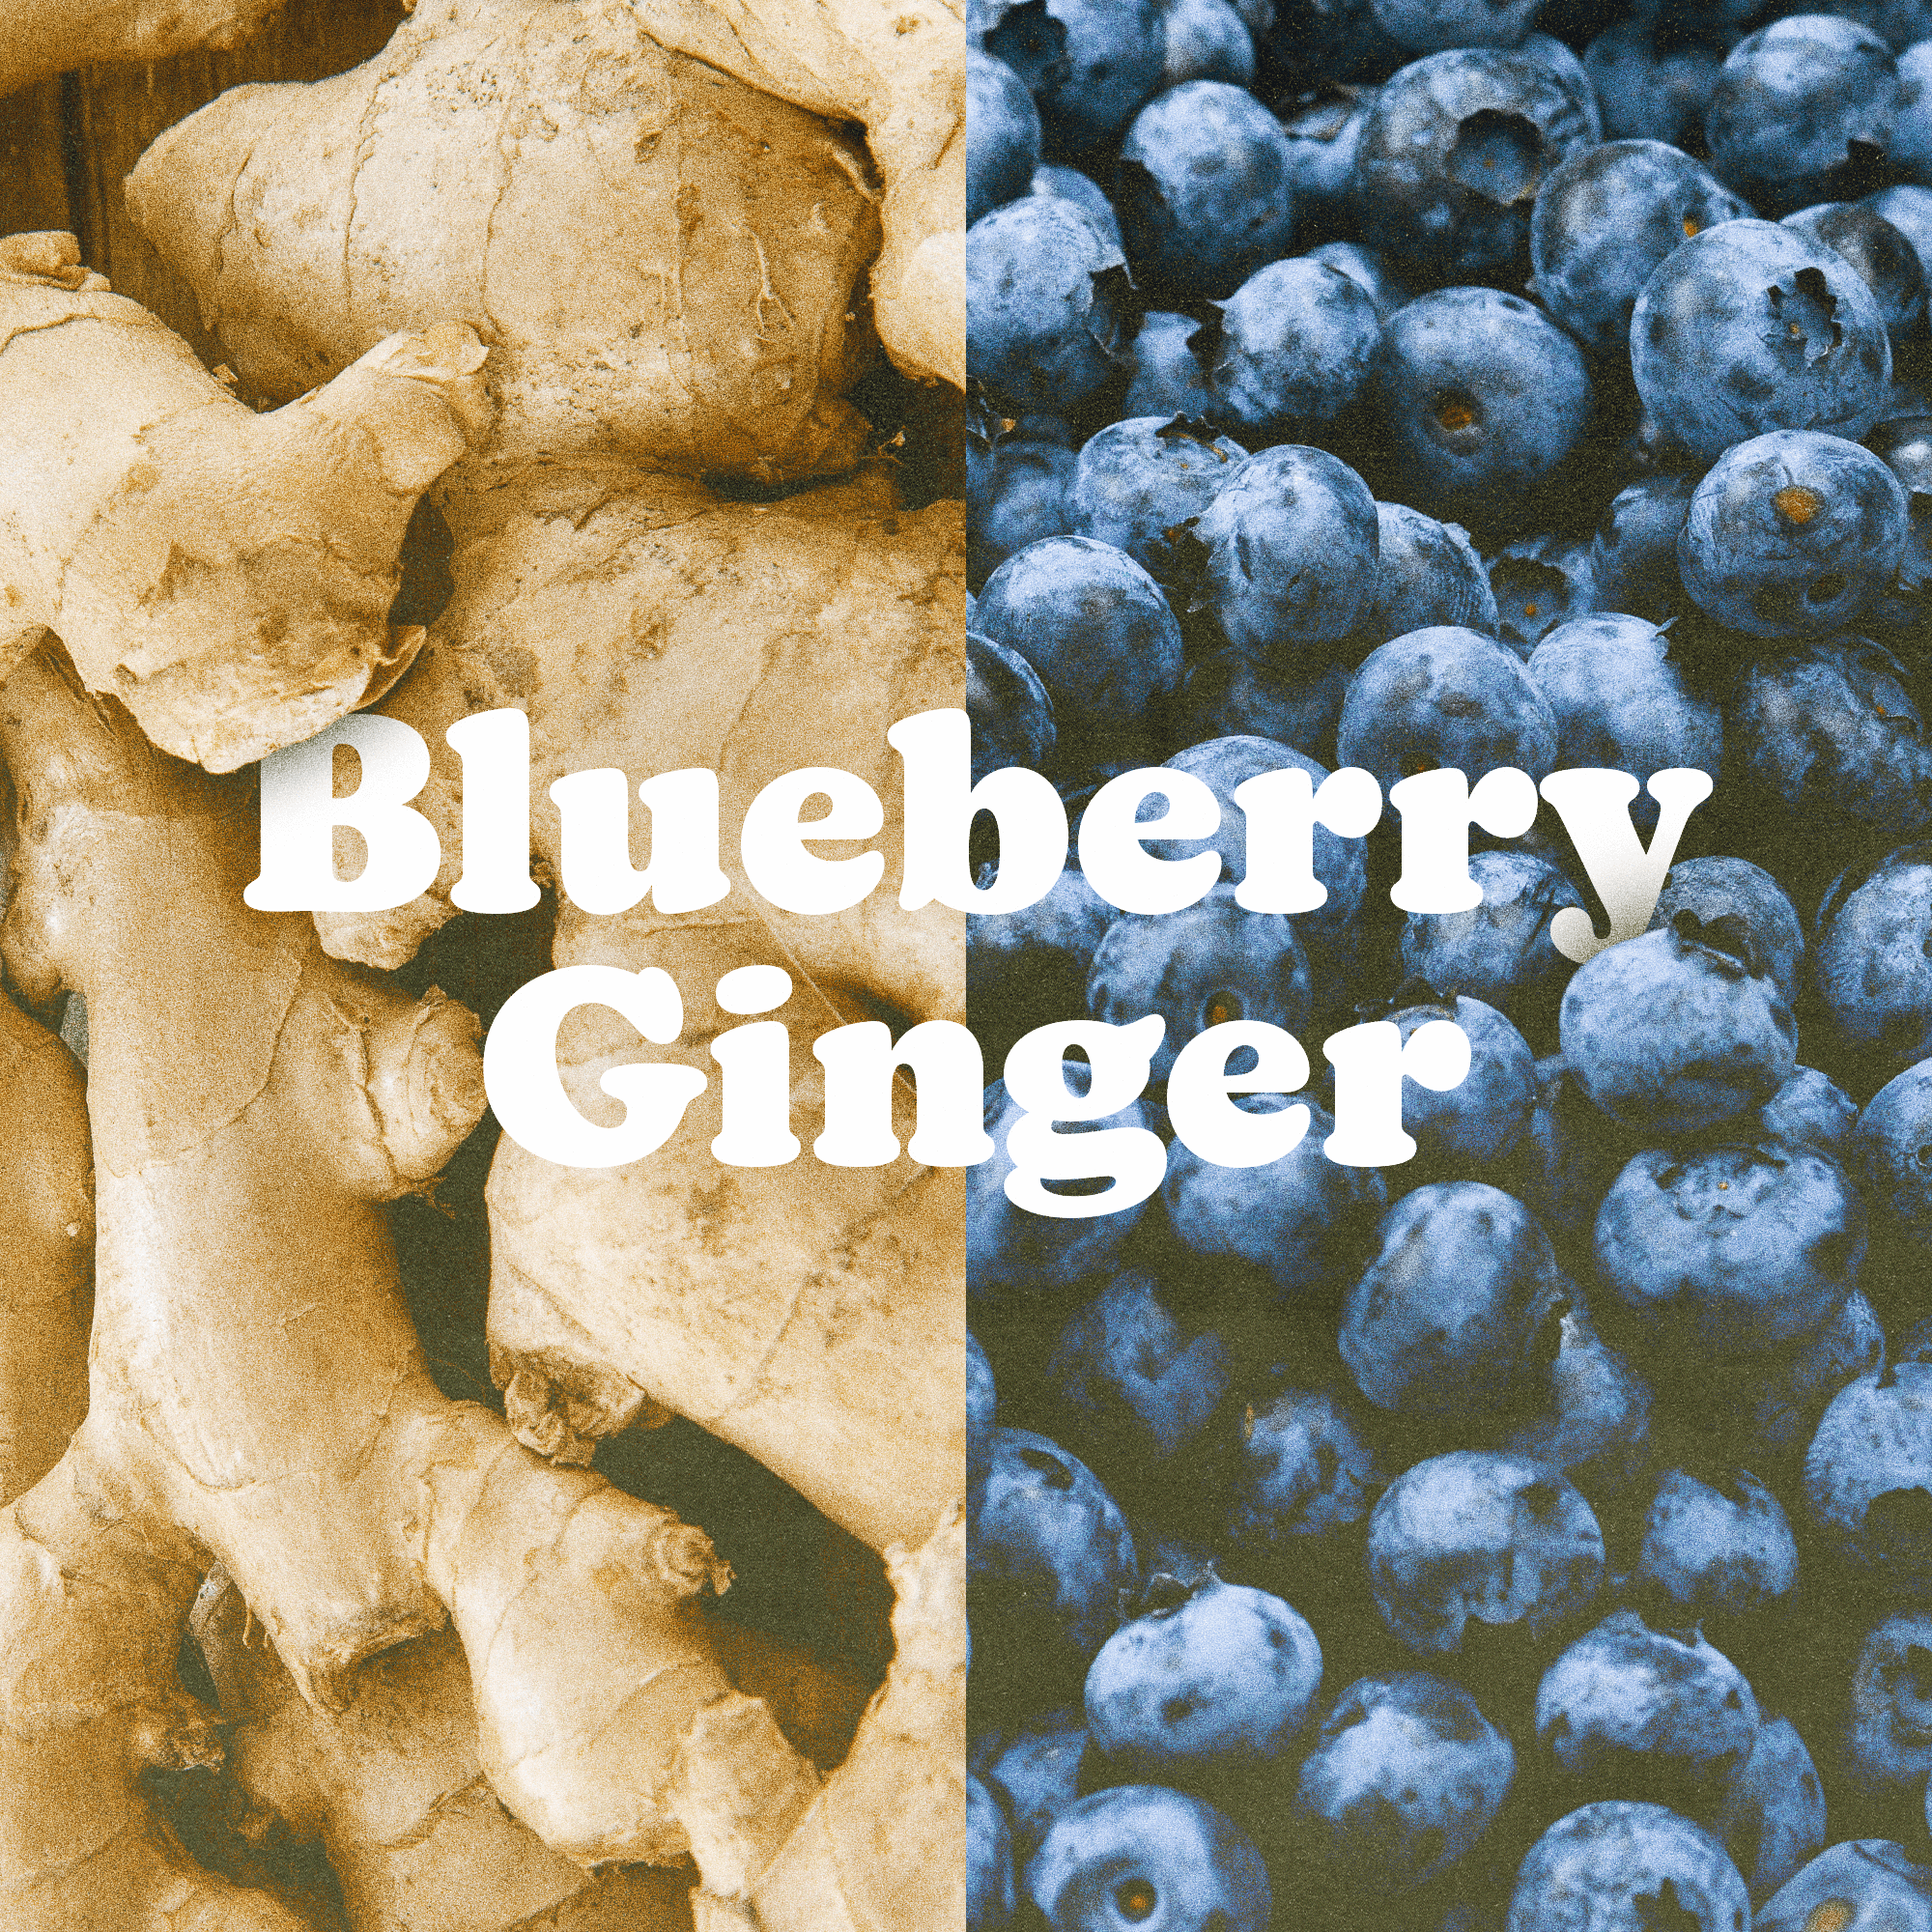 Blueberry Ginger